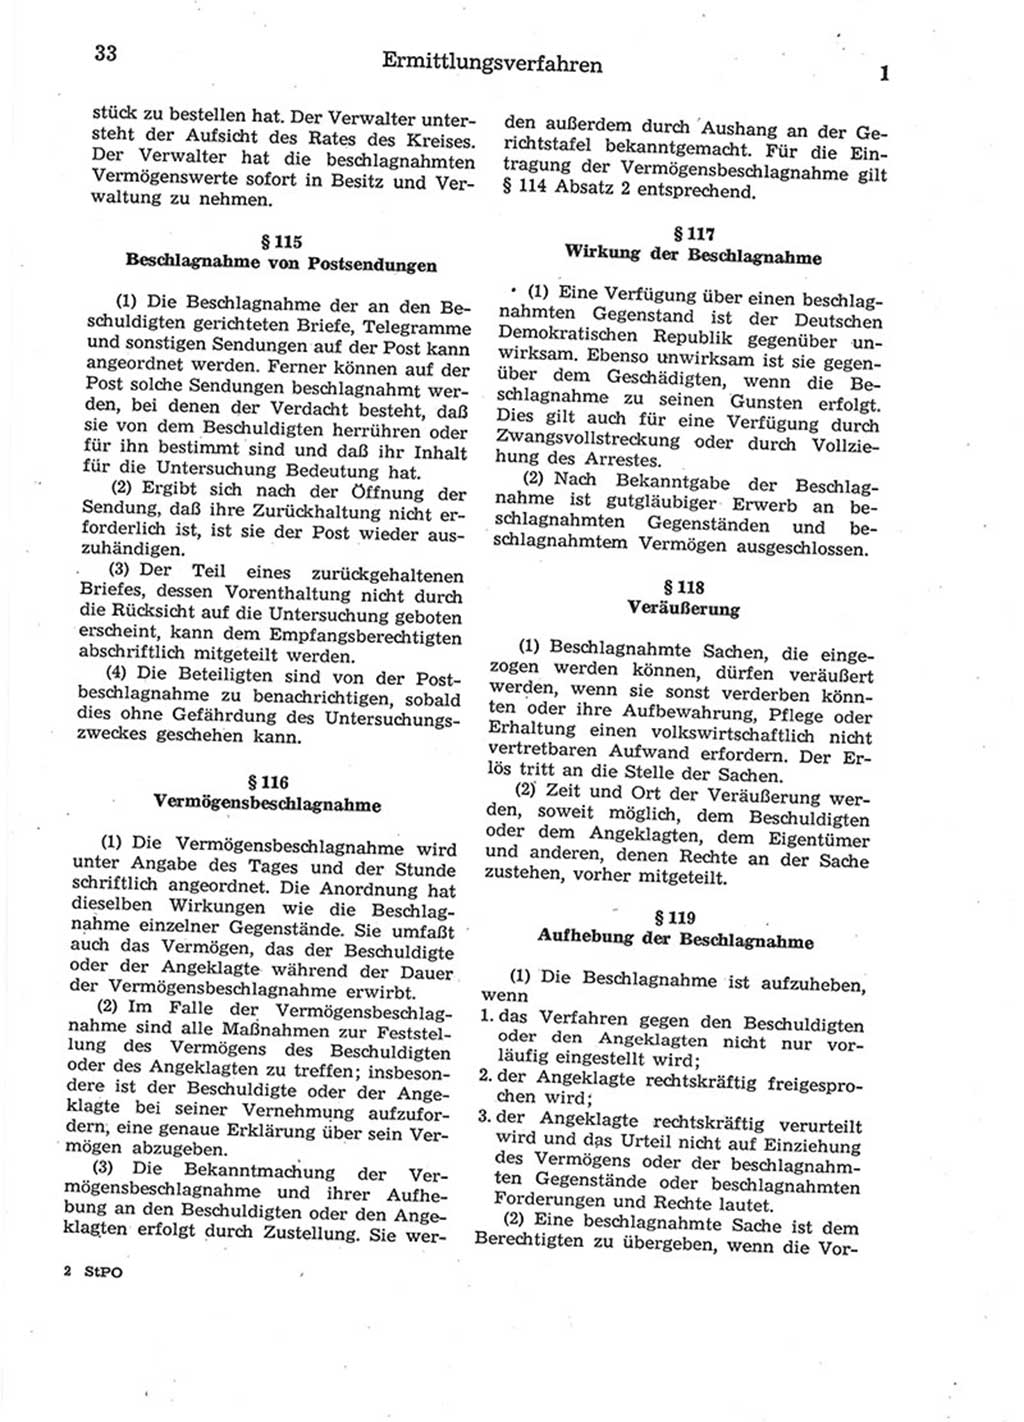 Strafprozeßordnung (StPO) der Deutschen Demokratischen Republik (DDR) 1975, Seite 33 (StPO DDR 1974, S. 33)